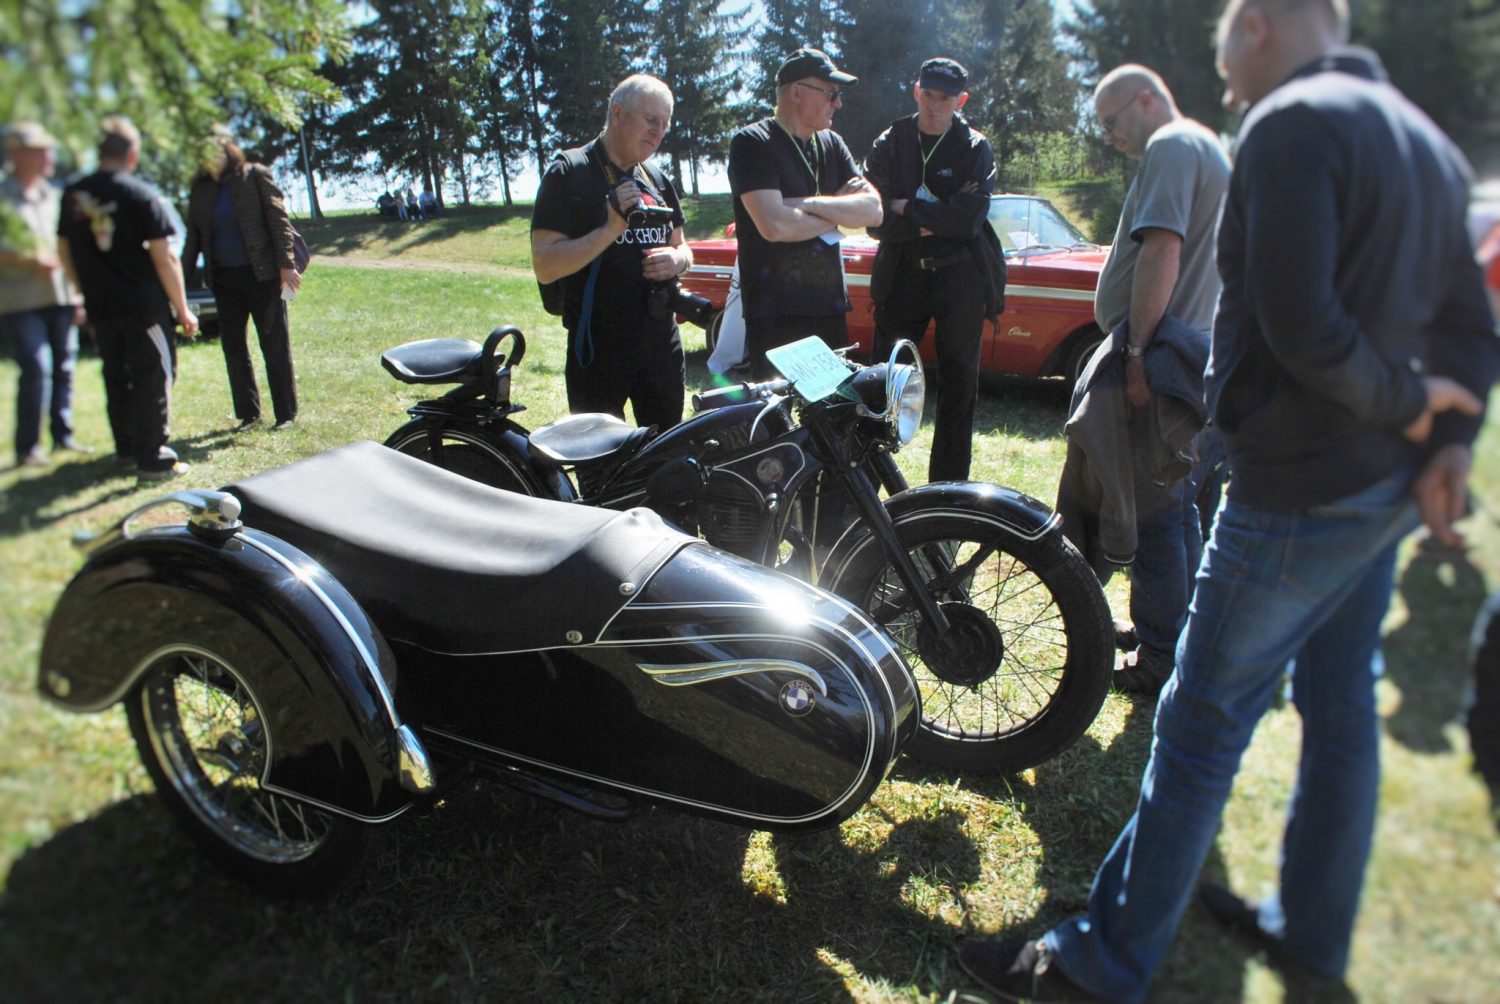 Geriausias renginio motociklas - Daliaus Linkevičiaus EMW R35/3, pagamintas 1953 m.